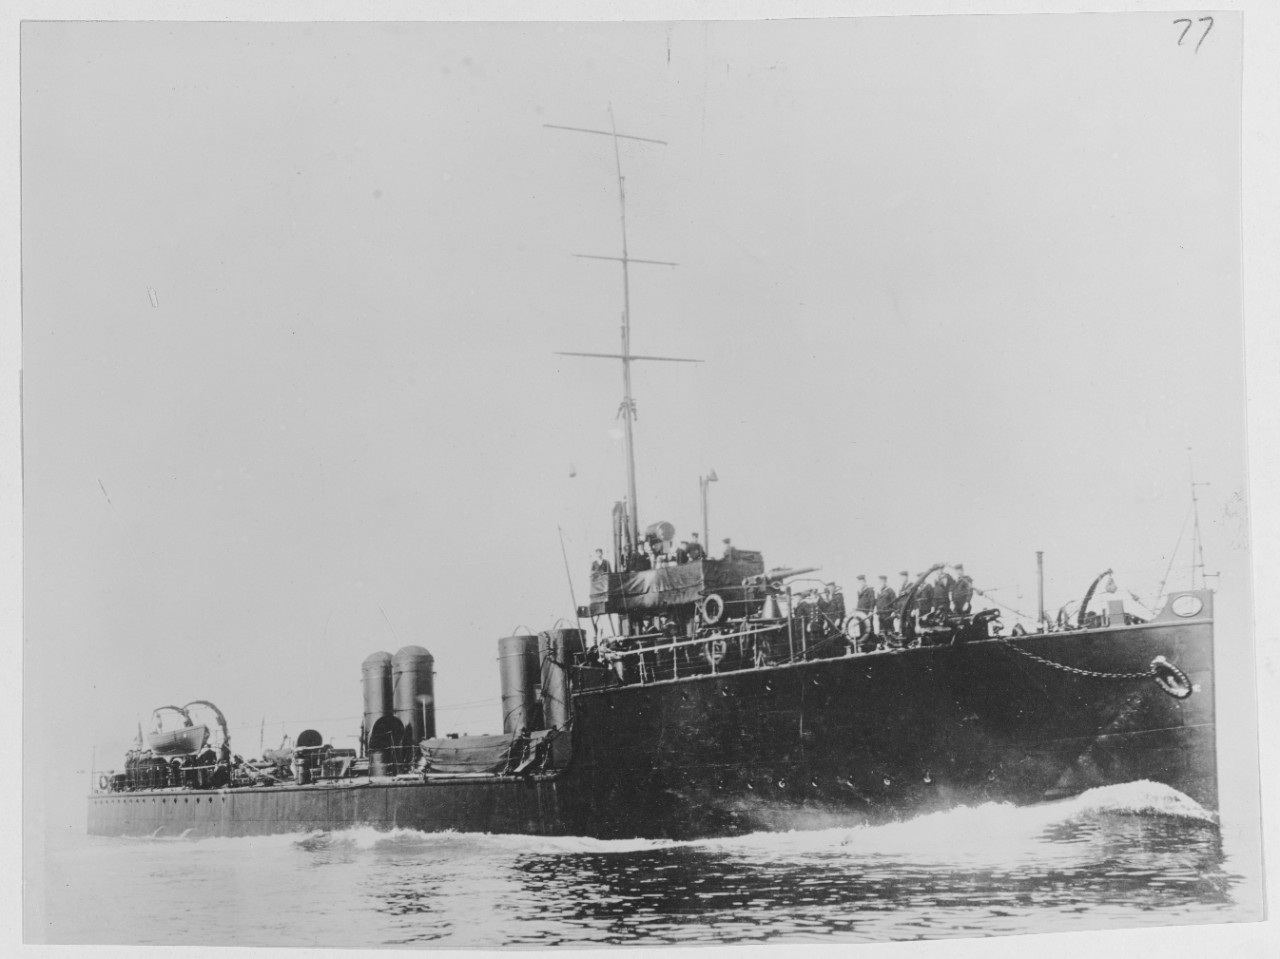 HMS ETTRICK British Destroyer, 1903